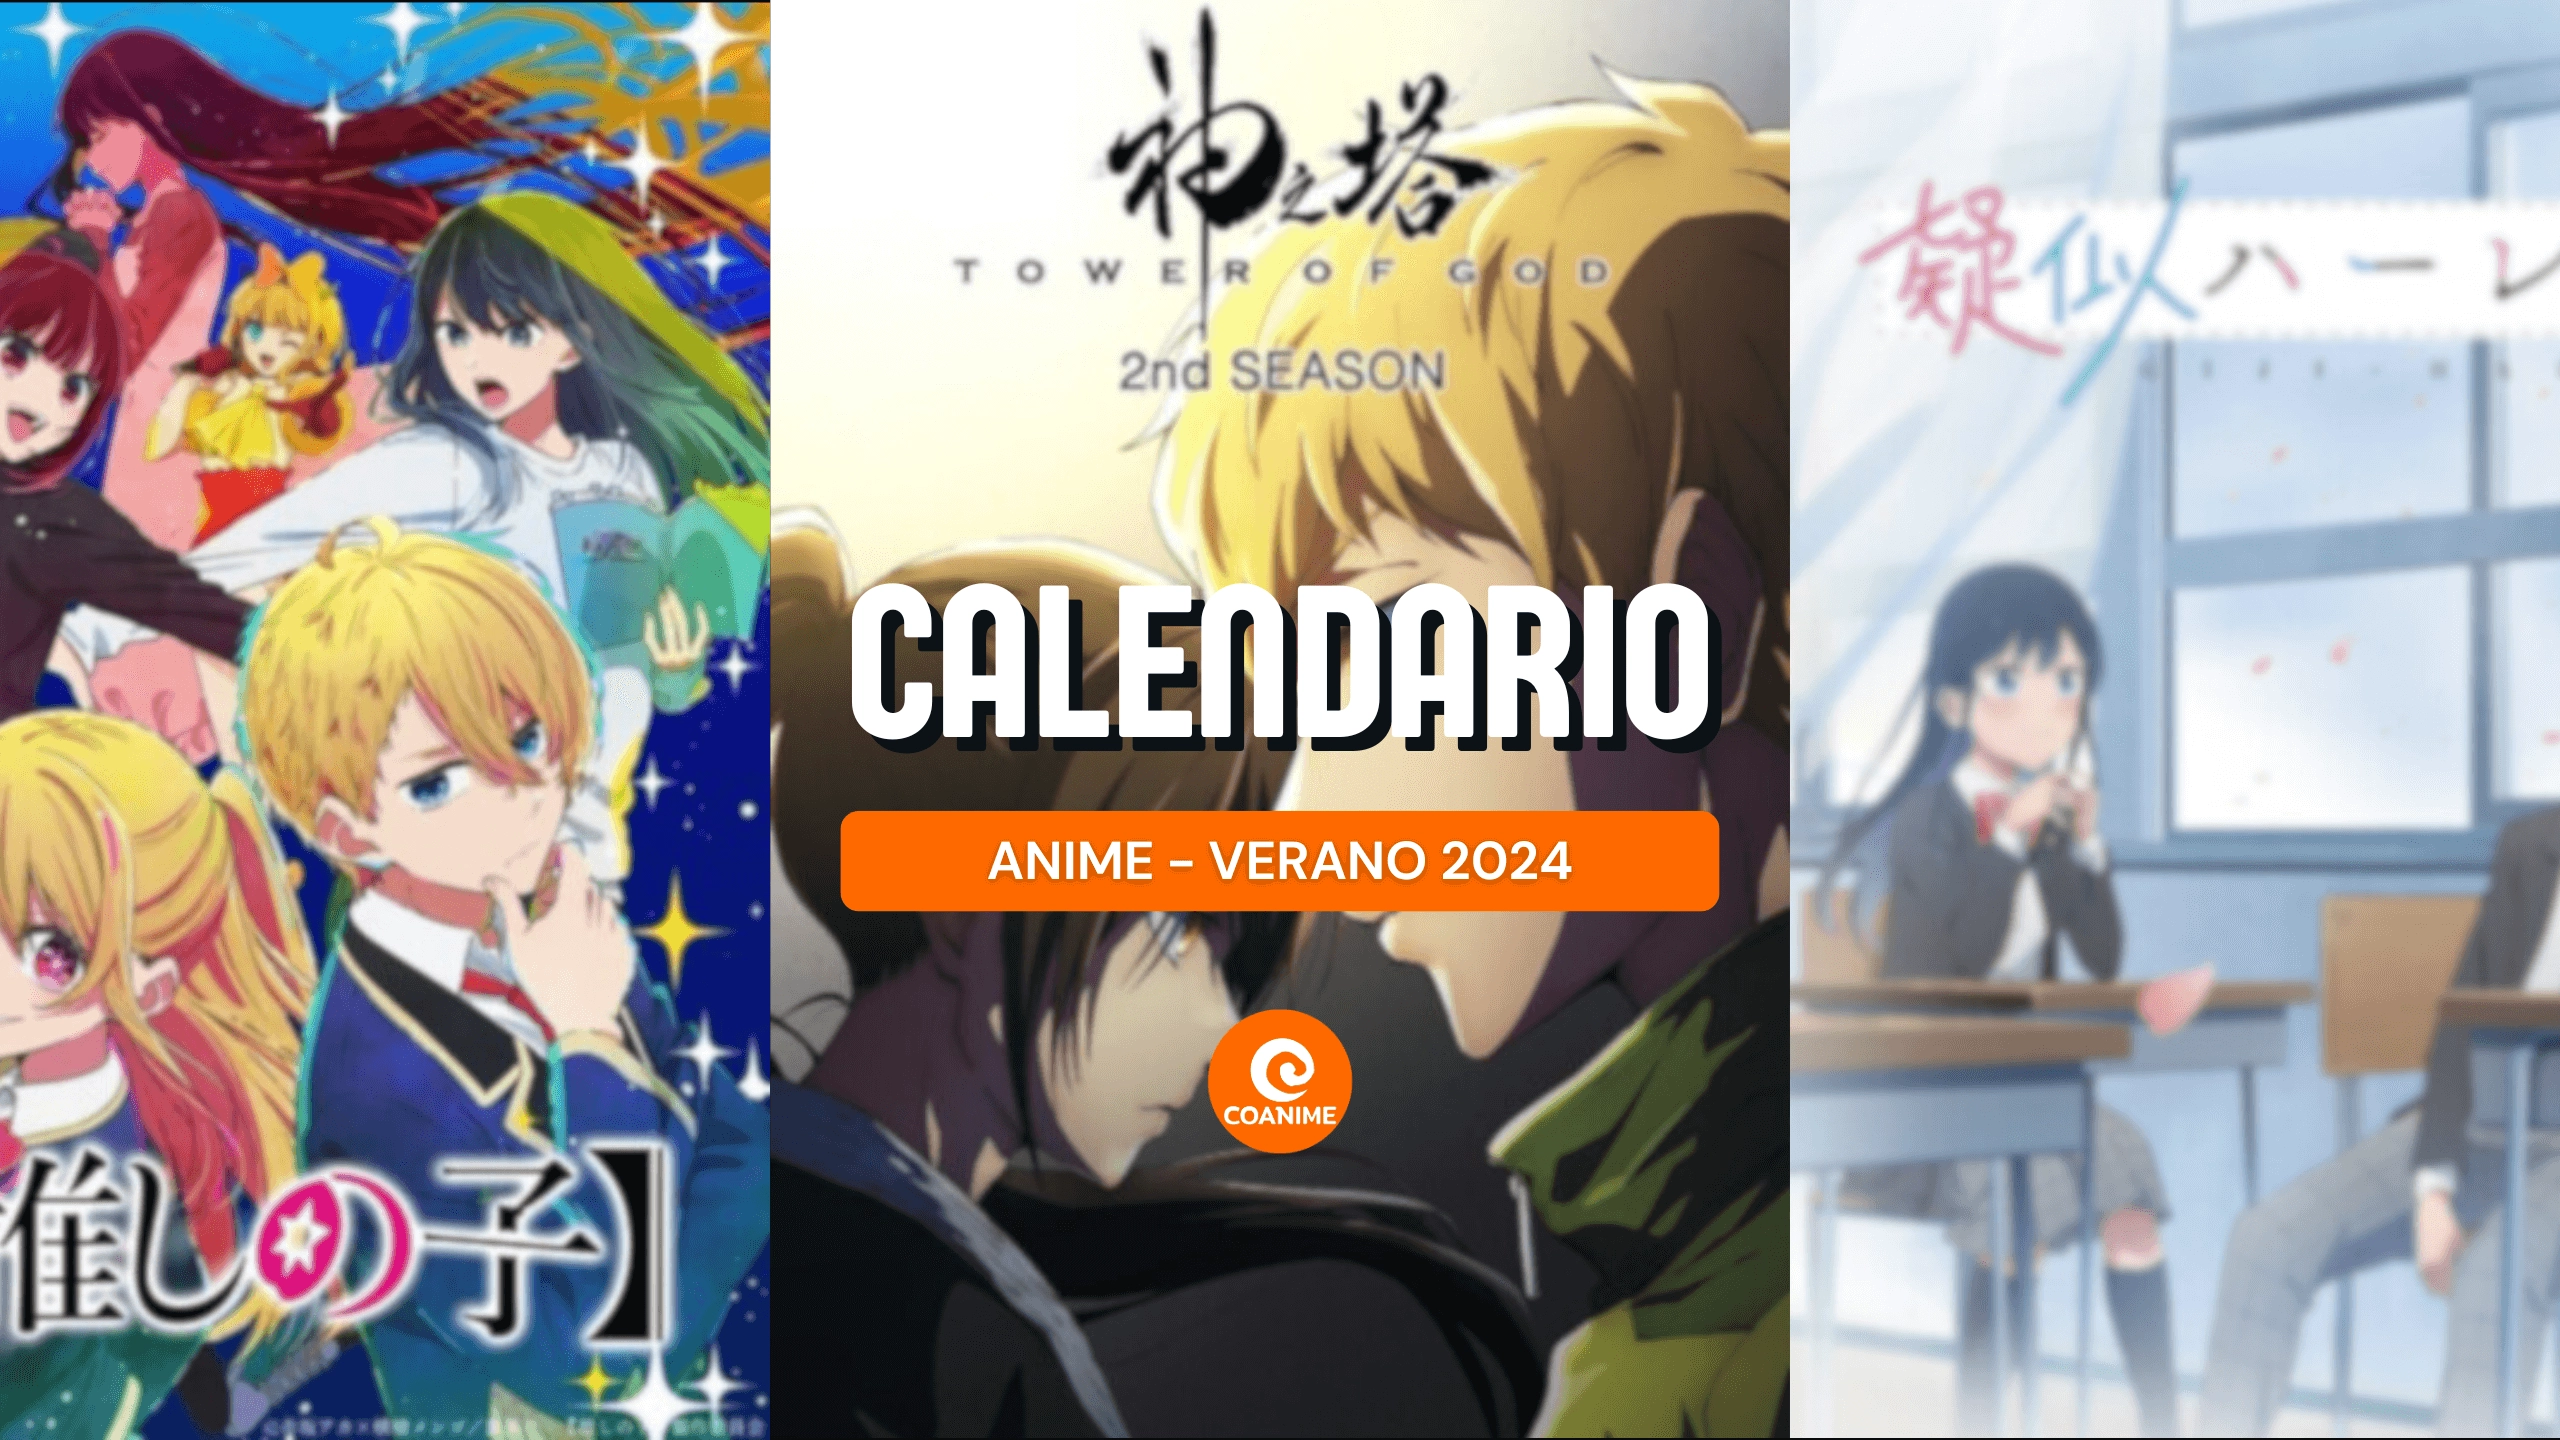 Calendario de estrenos de animes — Verano 2024 - Coanime.net